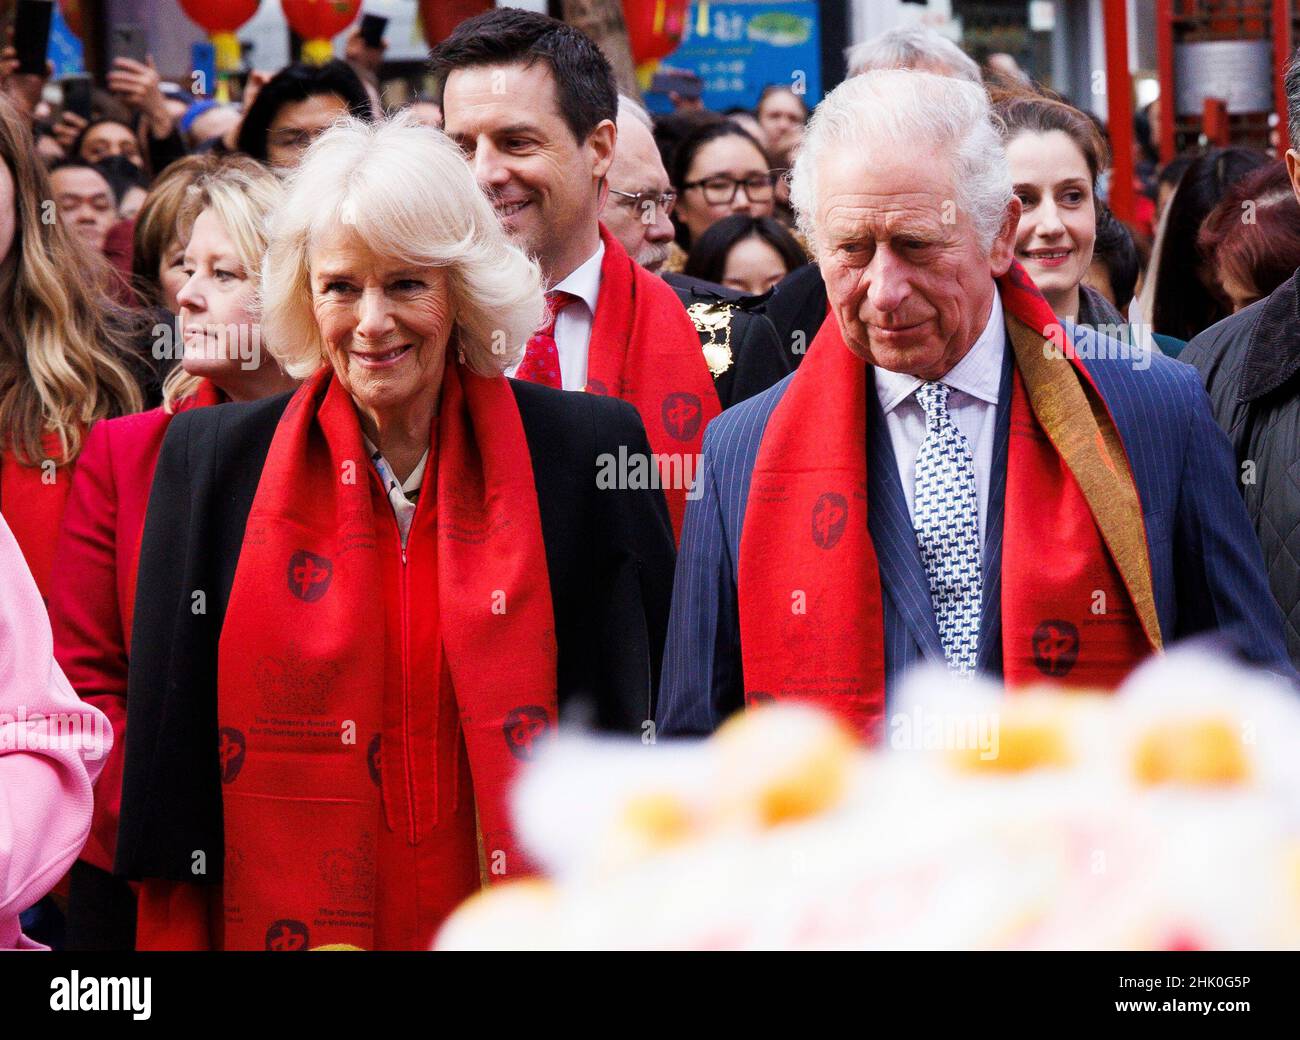 Londres, Royaume-Uni.1st févr. 2022.Le Prince Charles et Camilla, duchesse de Cornwall, portent des foulards rouges lorsqu'ils visitent Chinatown pour célébrer le nouvel an lunaire chinois qui commence le 1st février.C'est l'année du tigre.Crédit : Mark Thomas/Alay Live News Banque D'Images